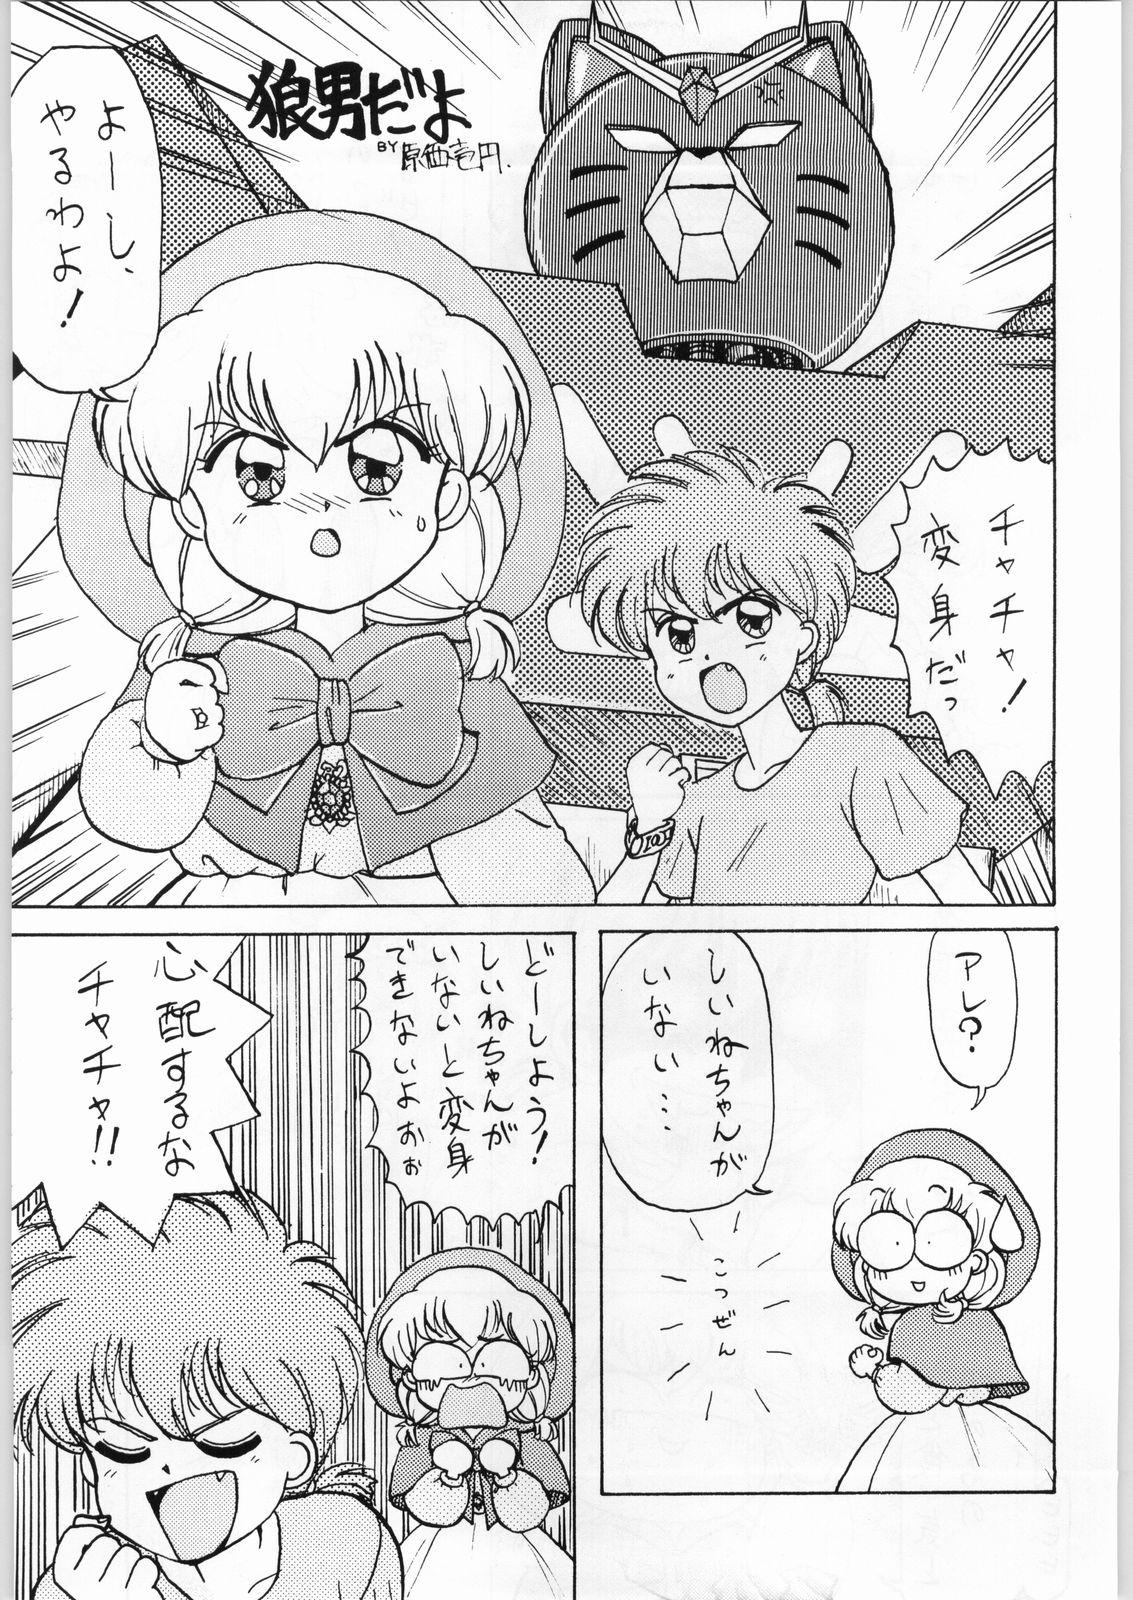 Bdsm Dance of Princess 3 - Sailor moon Tenchi muyo Akazukin cha cha Minky momo Ng knight lamune and 40 Stepbrother - Page 6